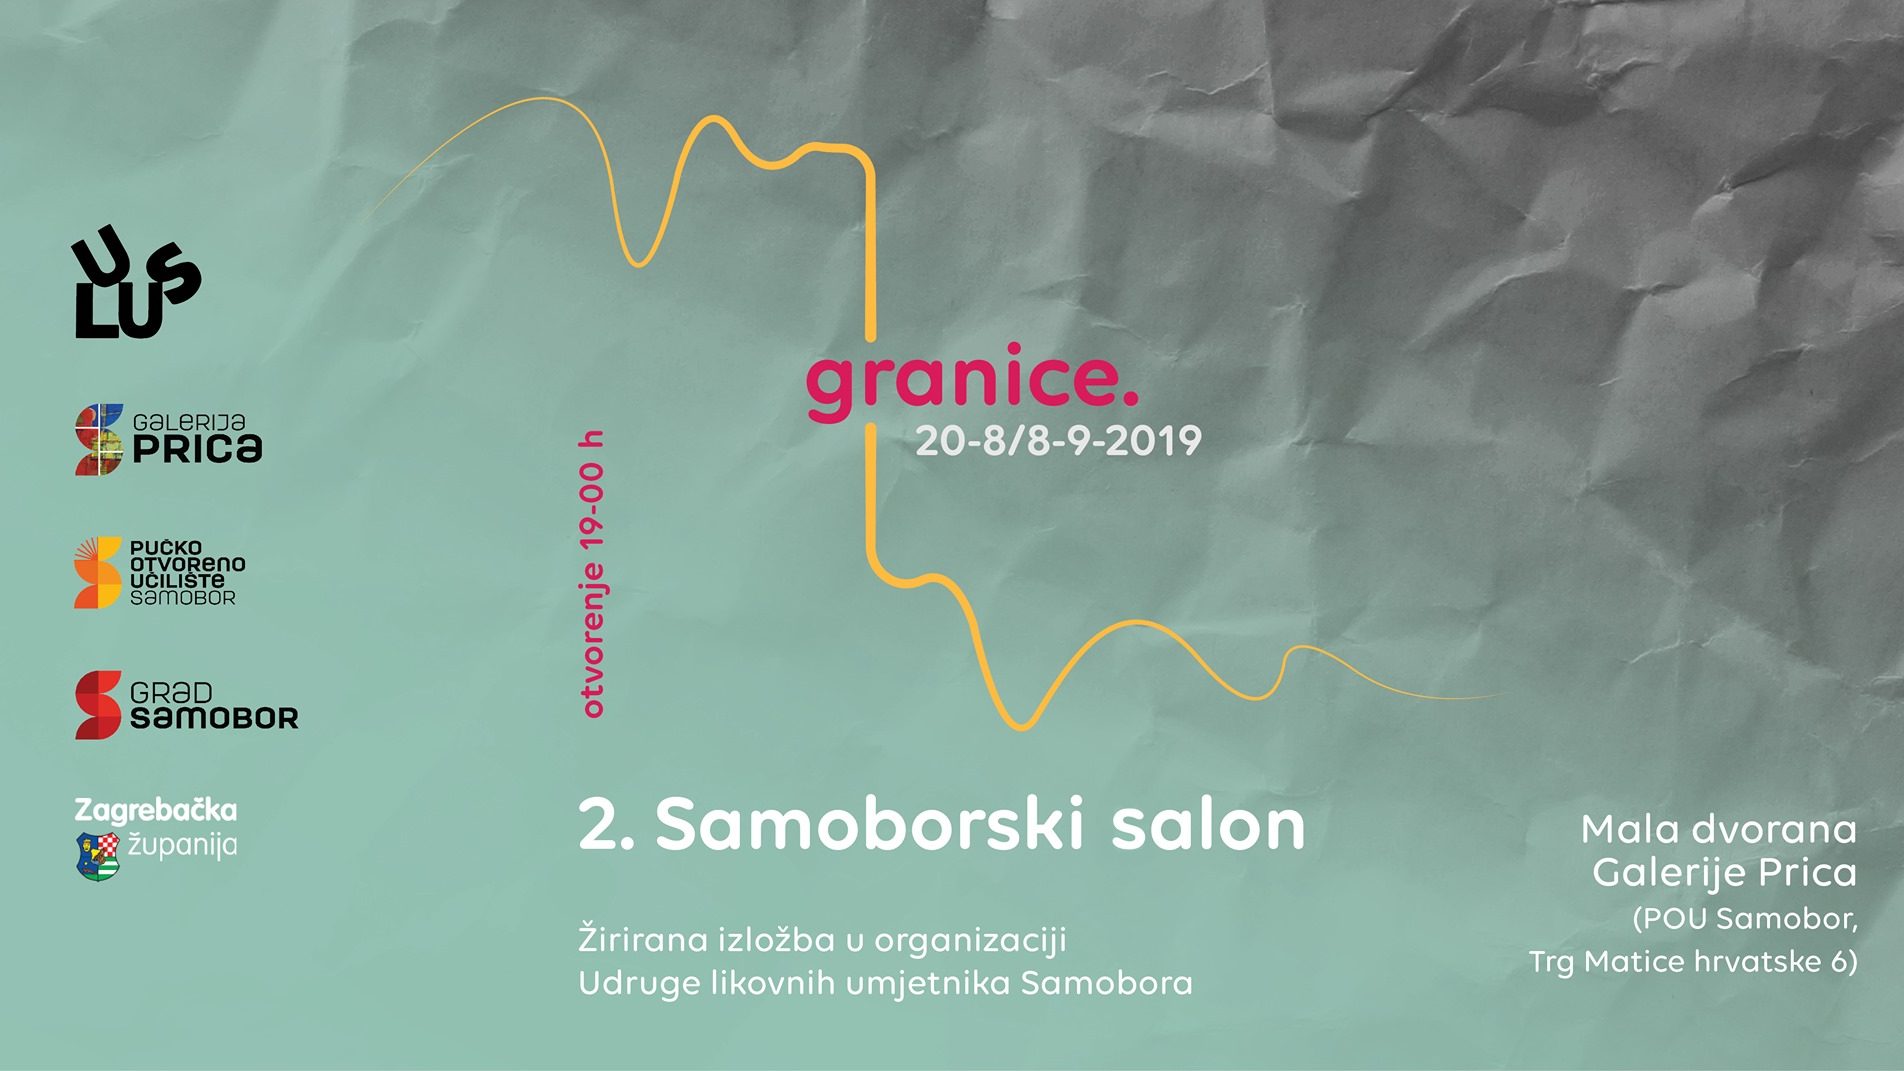 Najava izložbe: "Granice" - 2. Samoborski salon